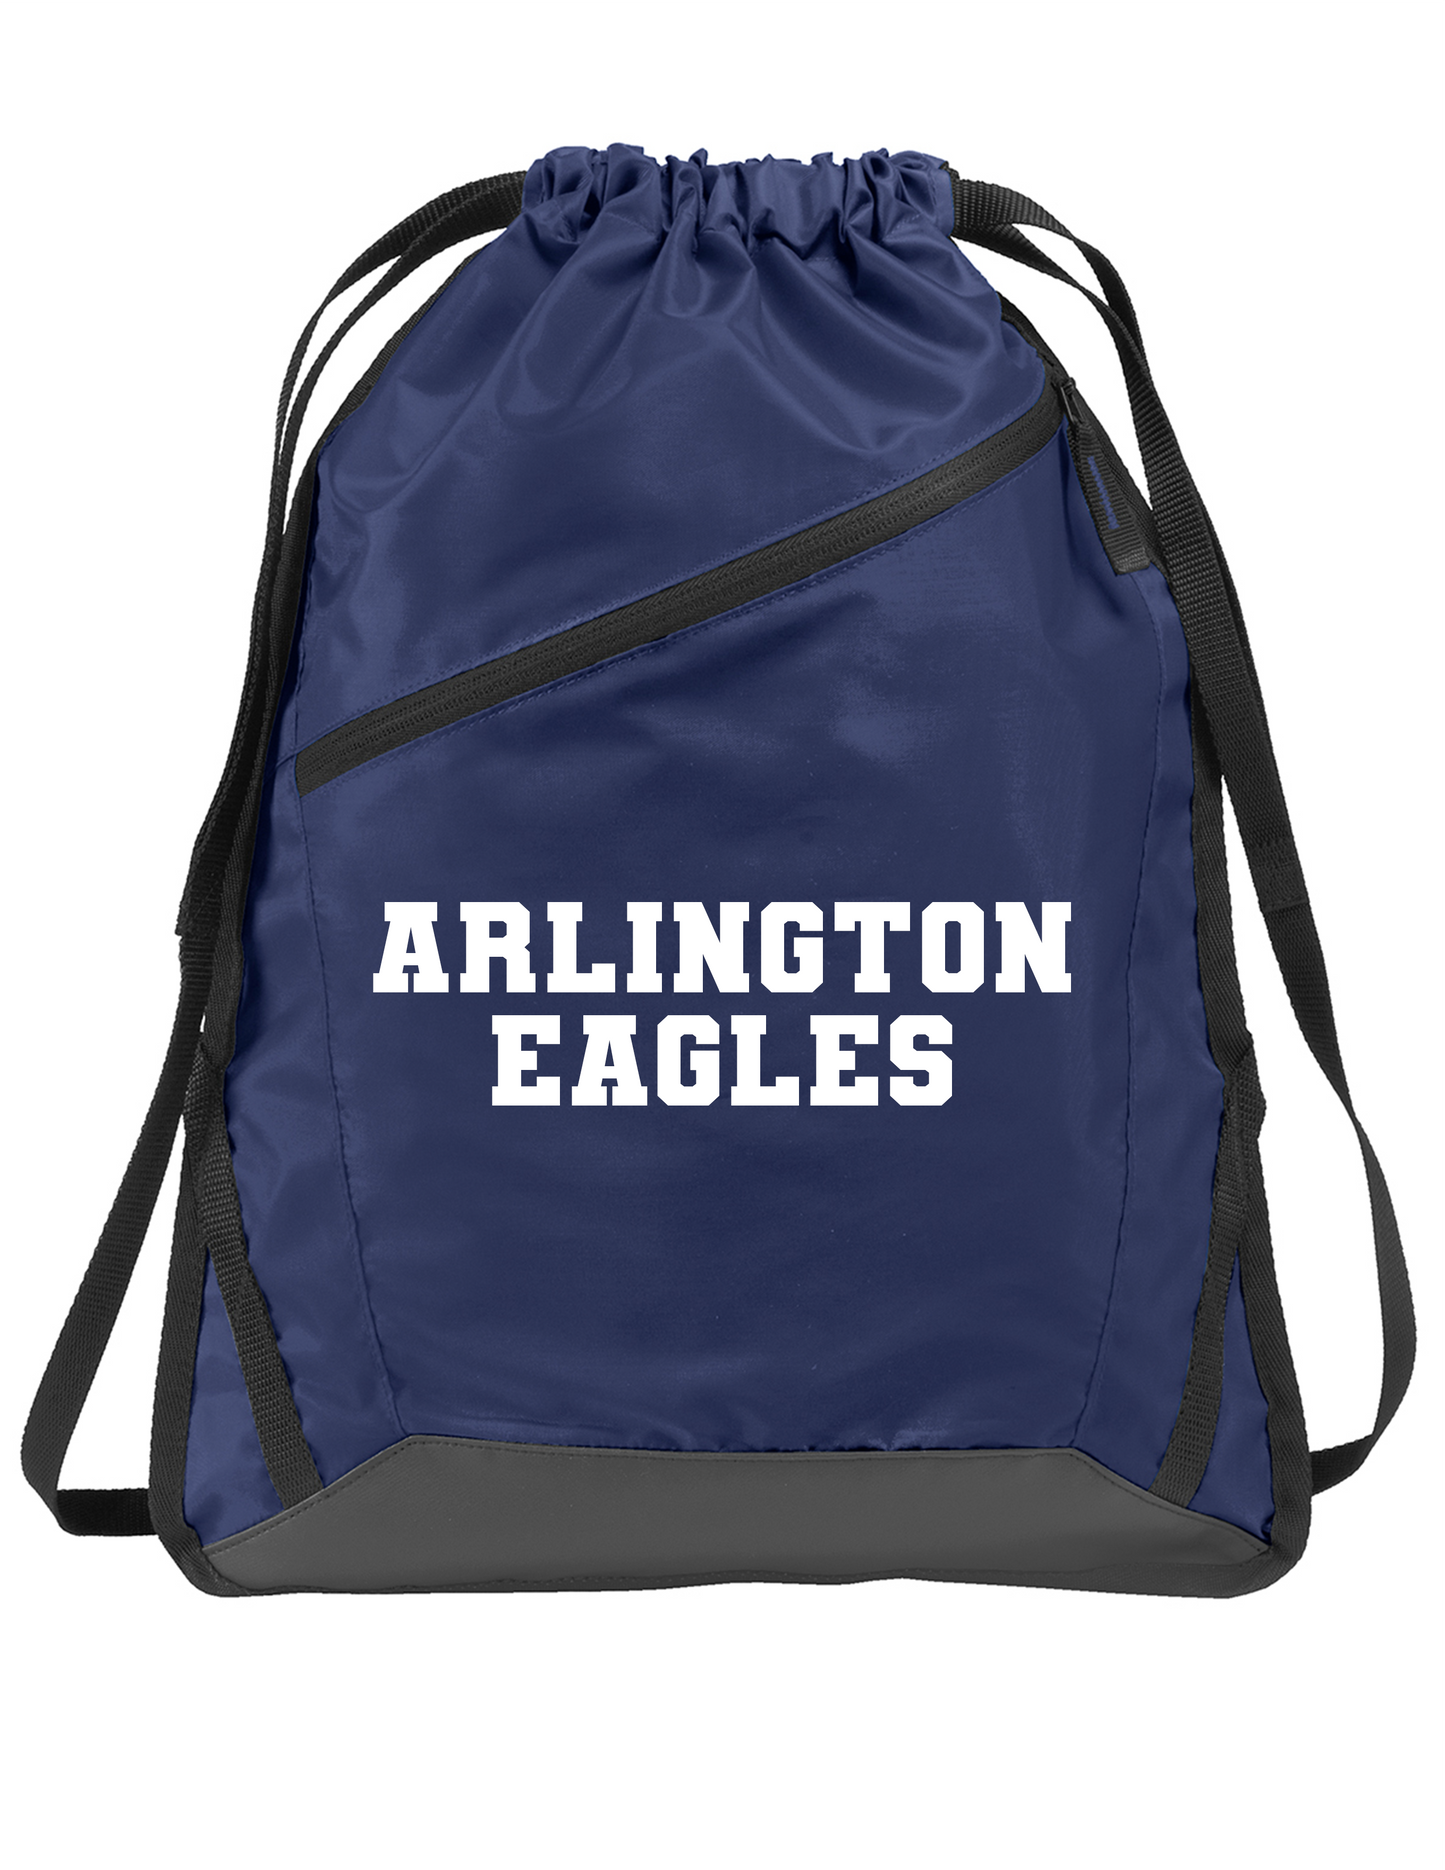 Arlington Eagles Drawstring Backpack